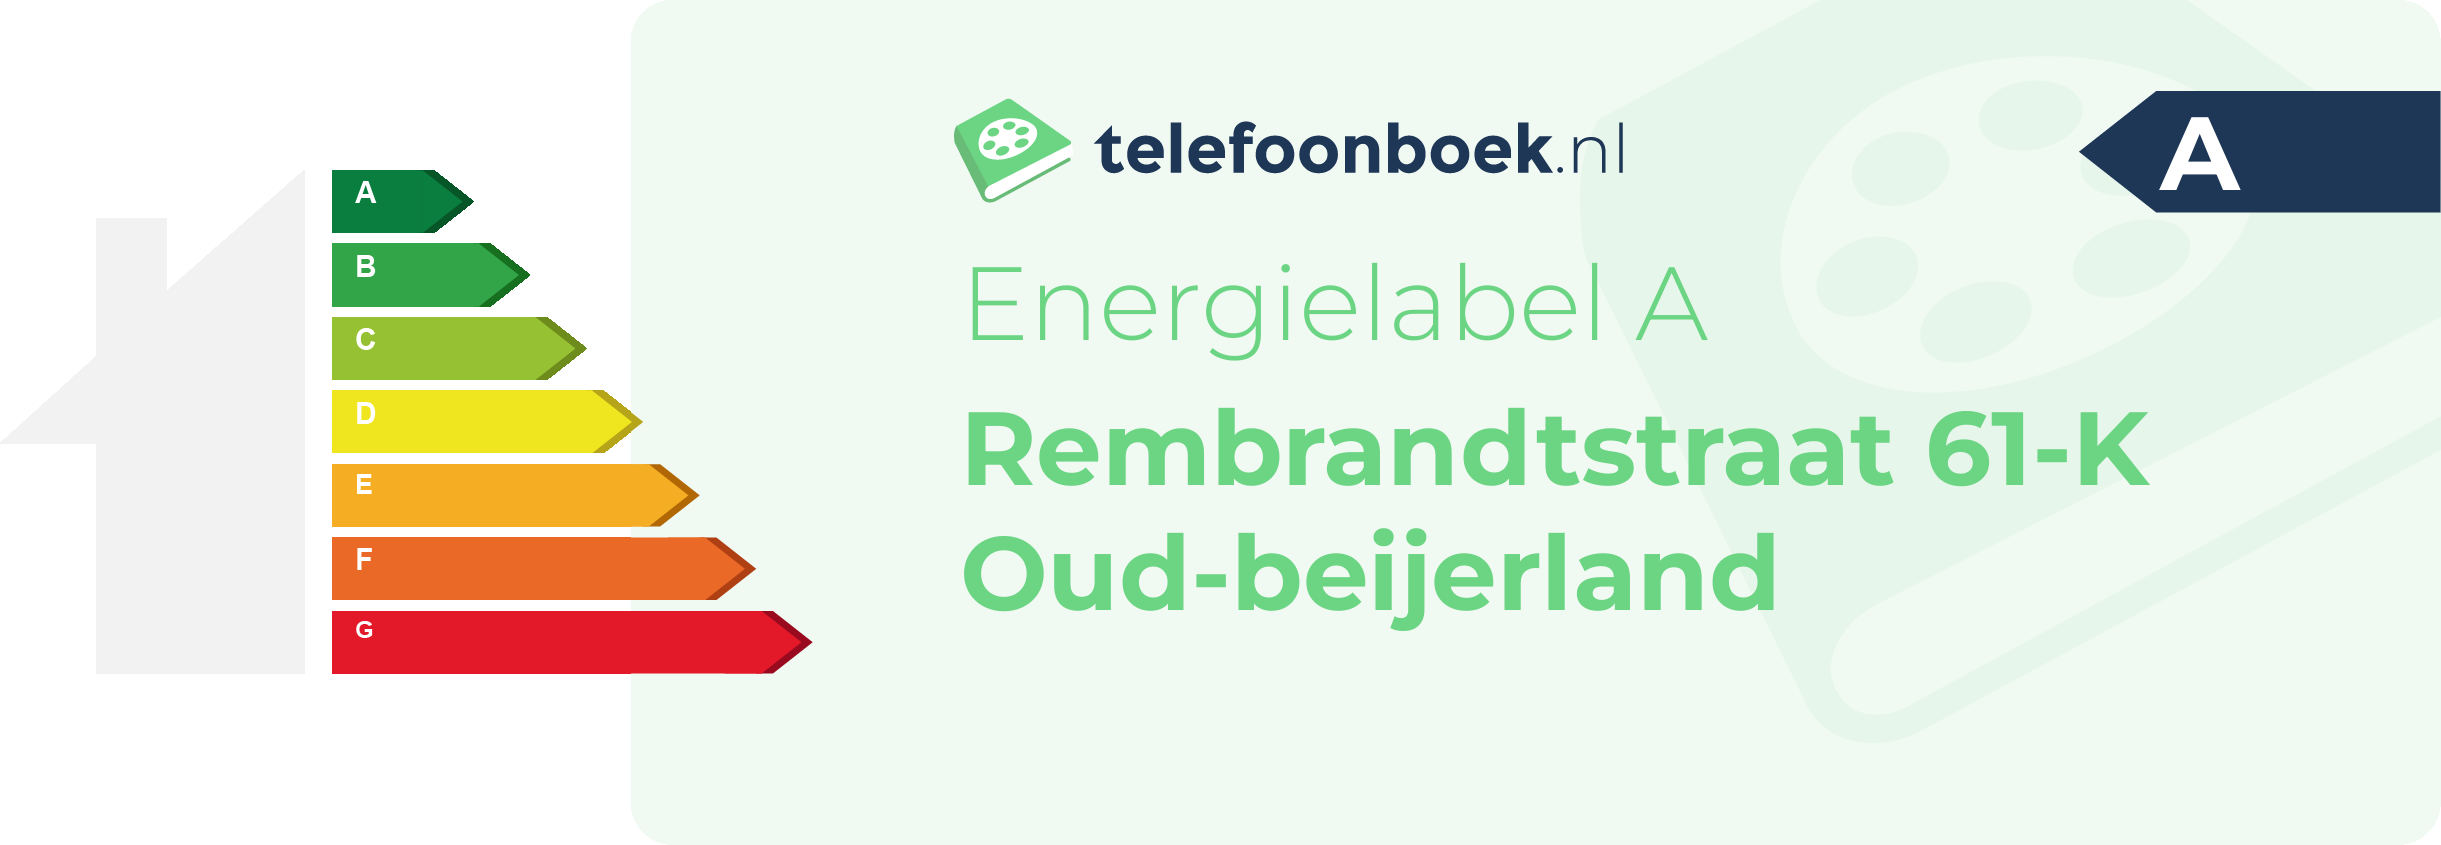 Energielabel Rembrandtstraat 61-K Oud-Beijerland